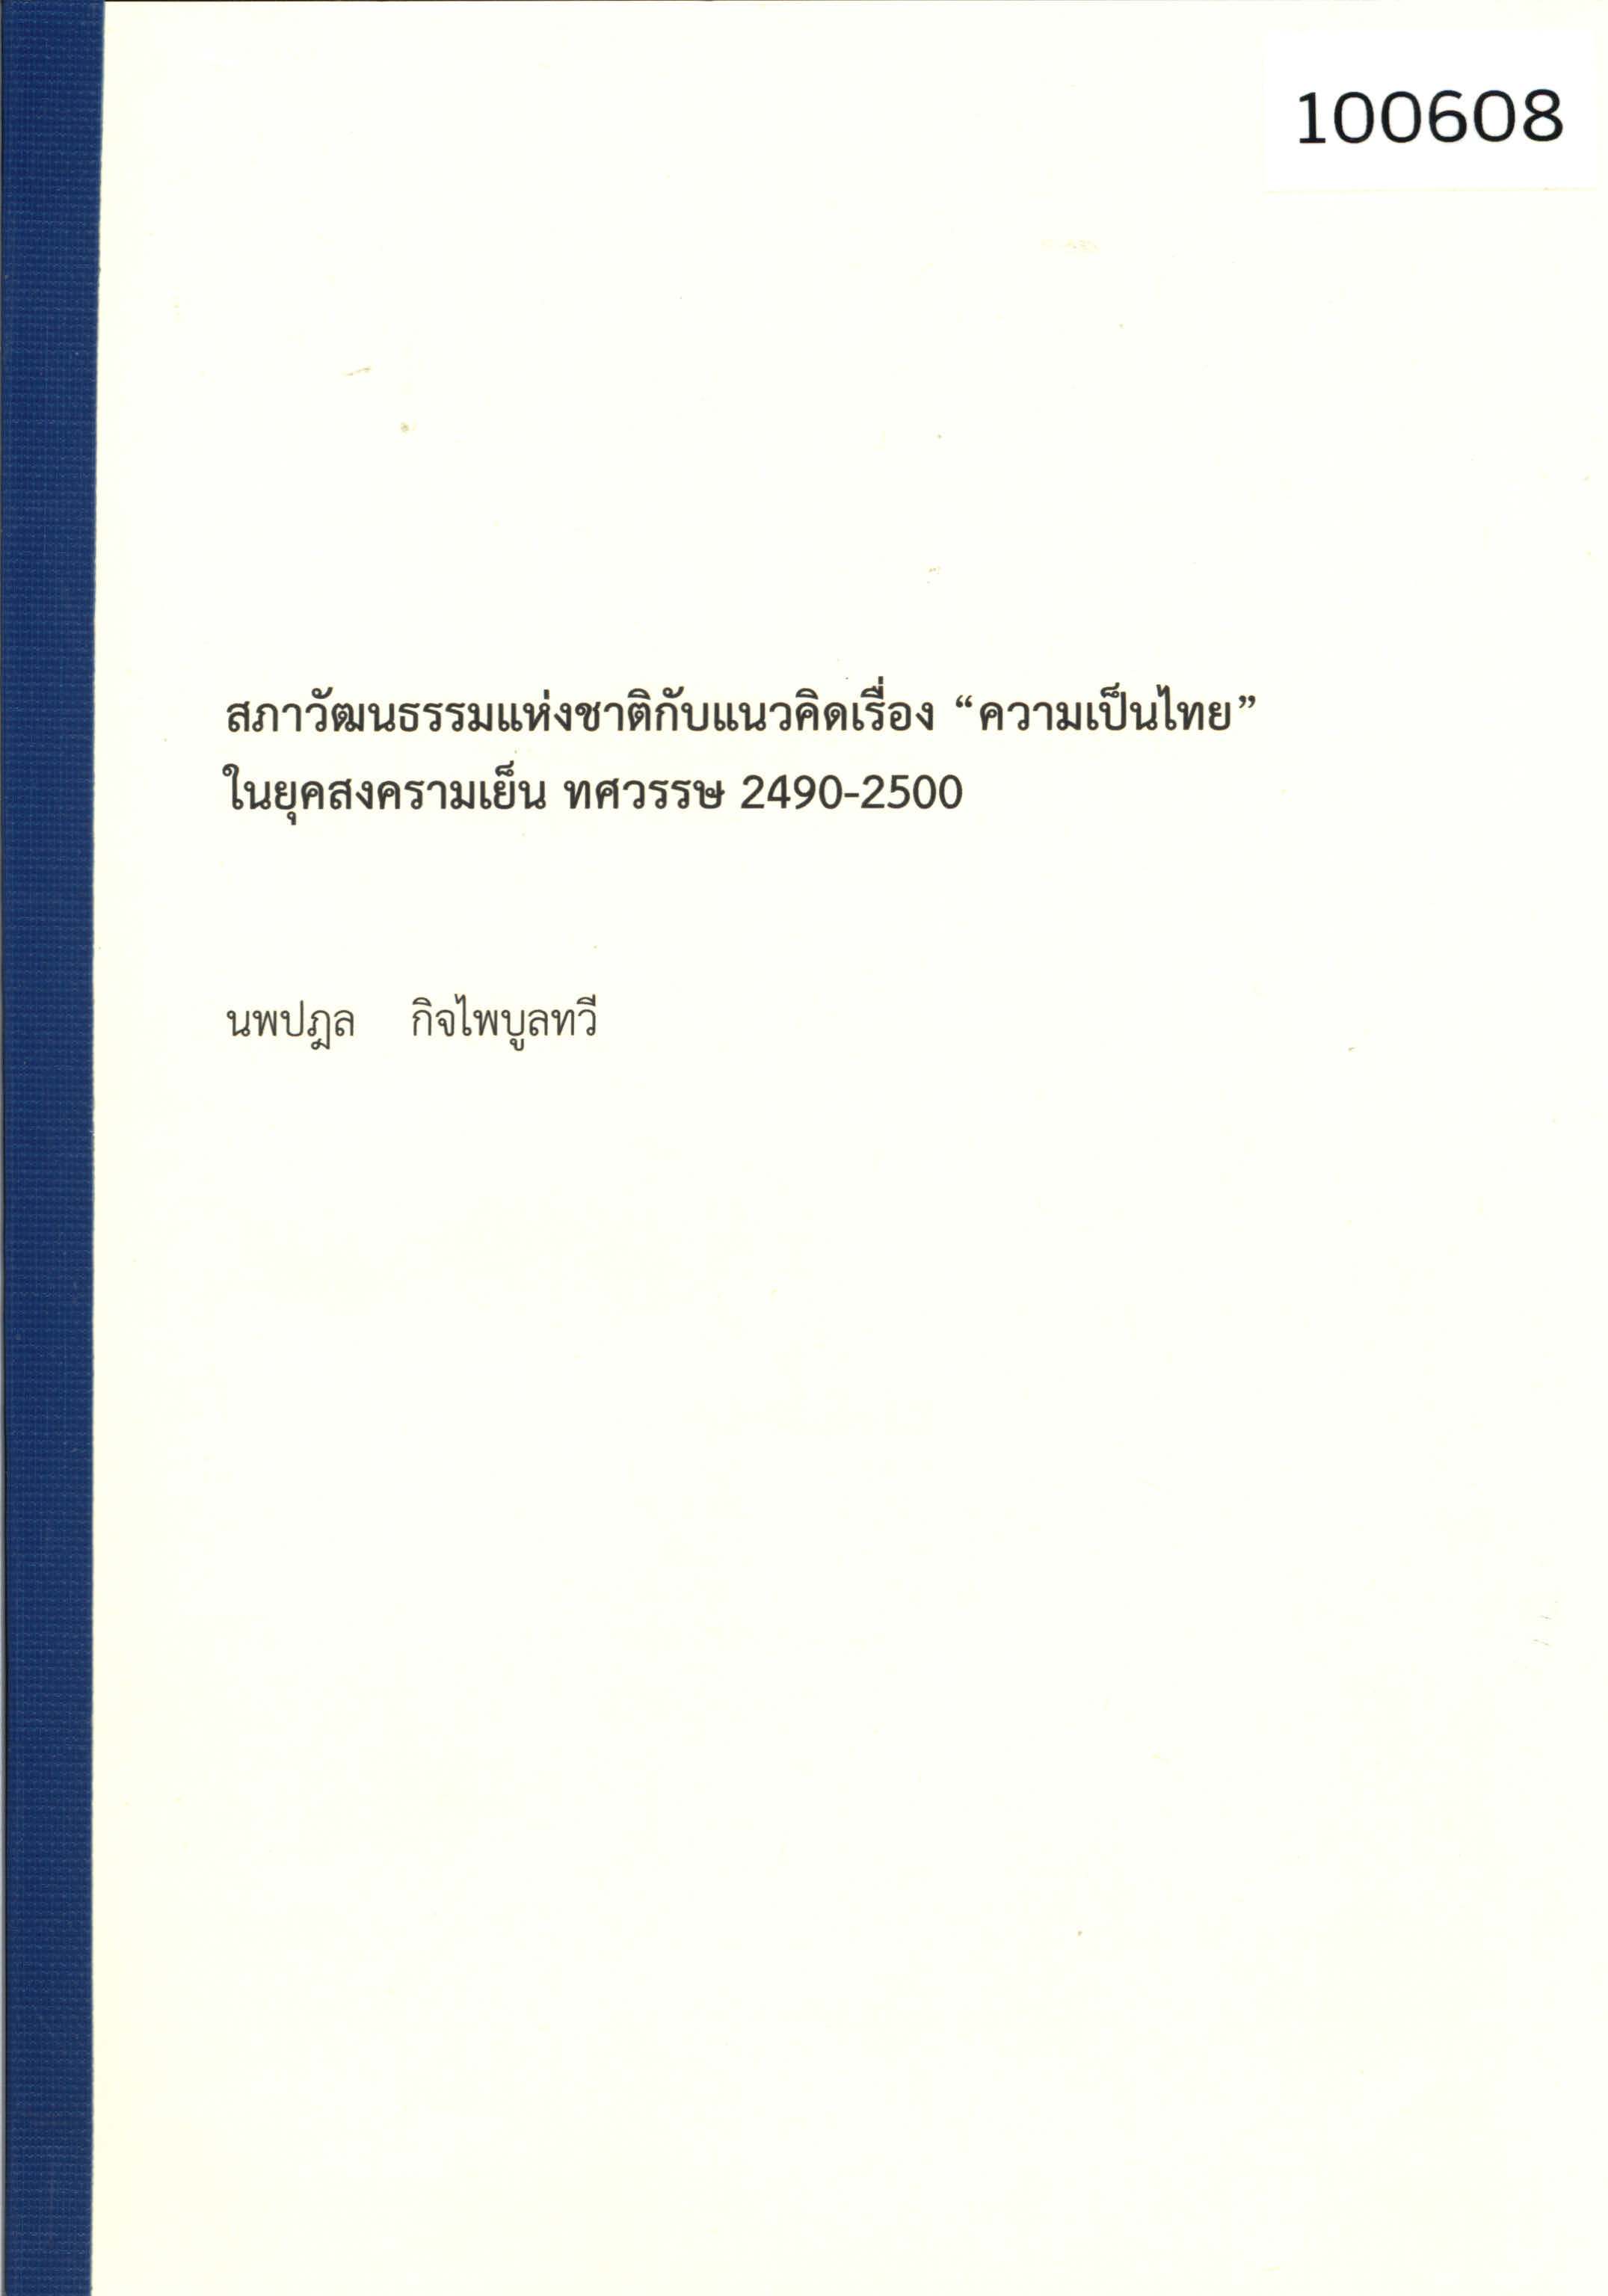 สภาวัฒนธรรมแห่งชาติกับแนวคิดเรื่อง “ความเป็นไทย” ในยุคสงครามเย็น ทศวรรษ 2490-2500 